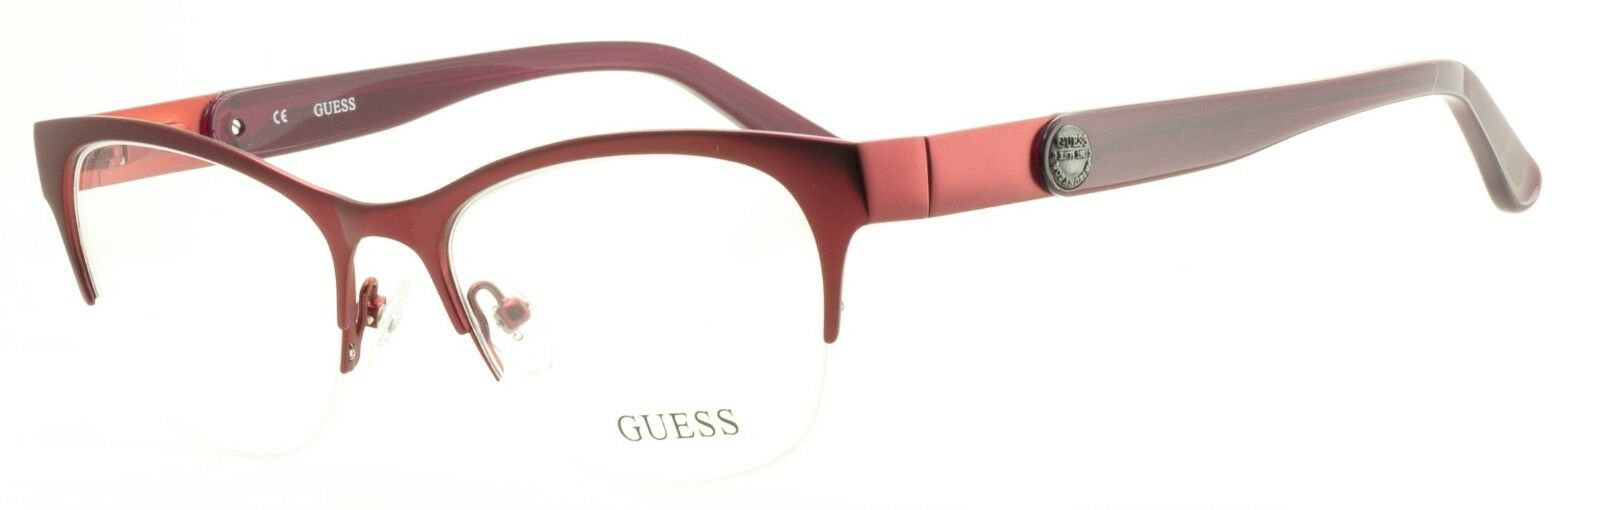 GUESS GU 2357 BU Eyewear FRAMES Glasses Eyeglasses RX Optical BNIB New - TRUSTED